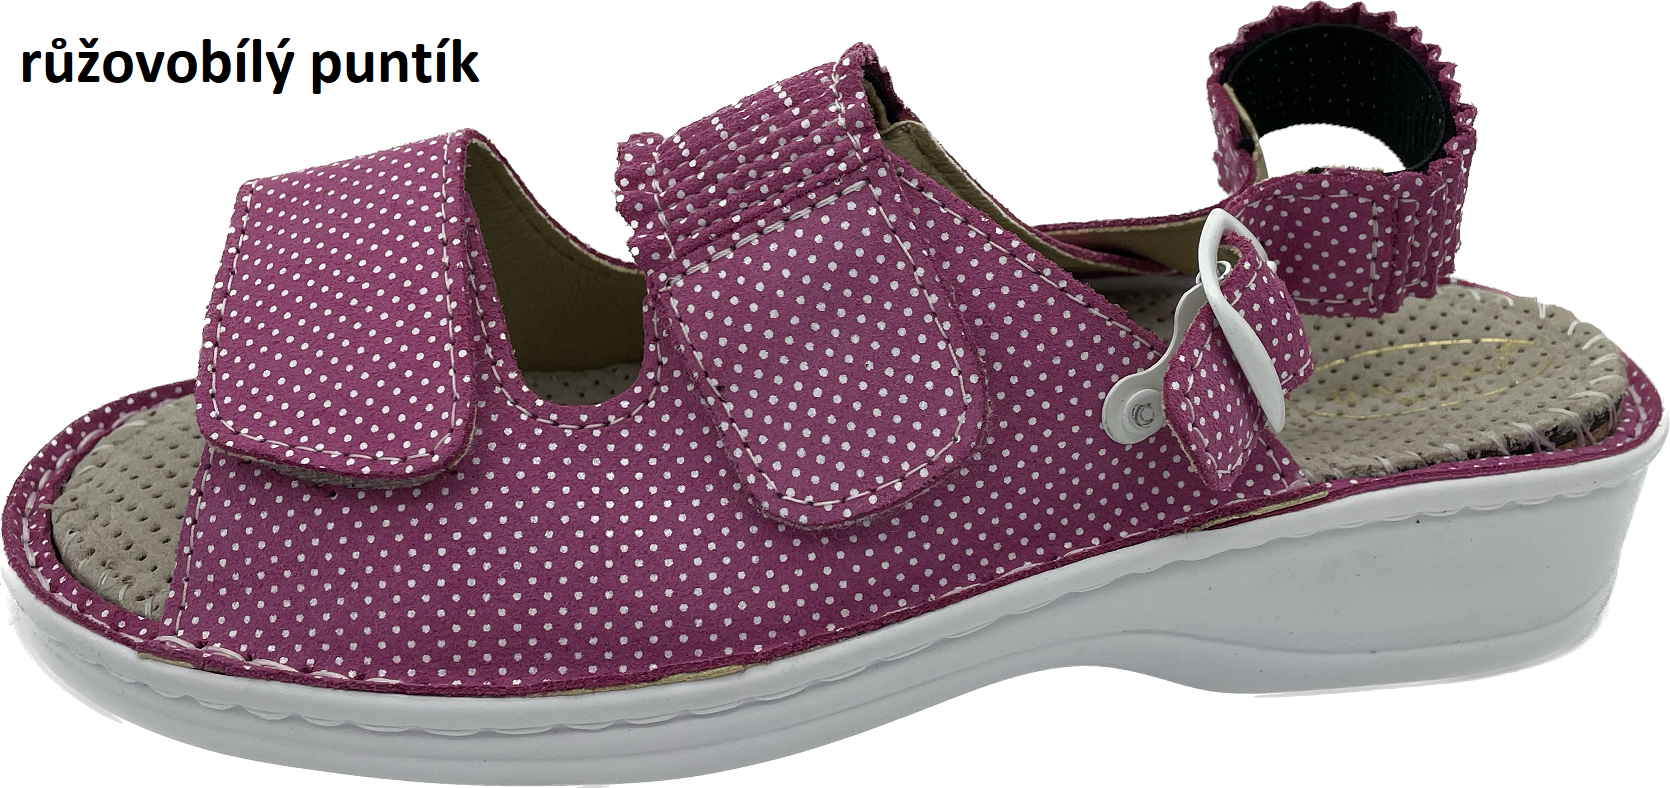 Boty Hanák vzor 304 P - bílá podešev Barva usně: růžovobílý puntík jemný, Velikosti obuvi: 35